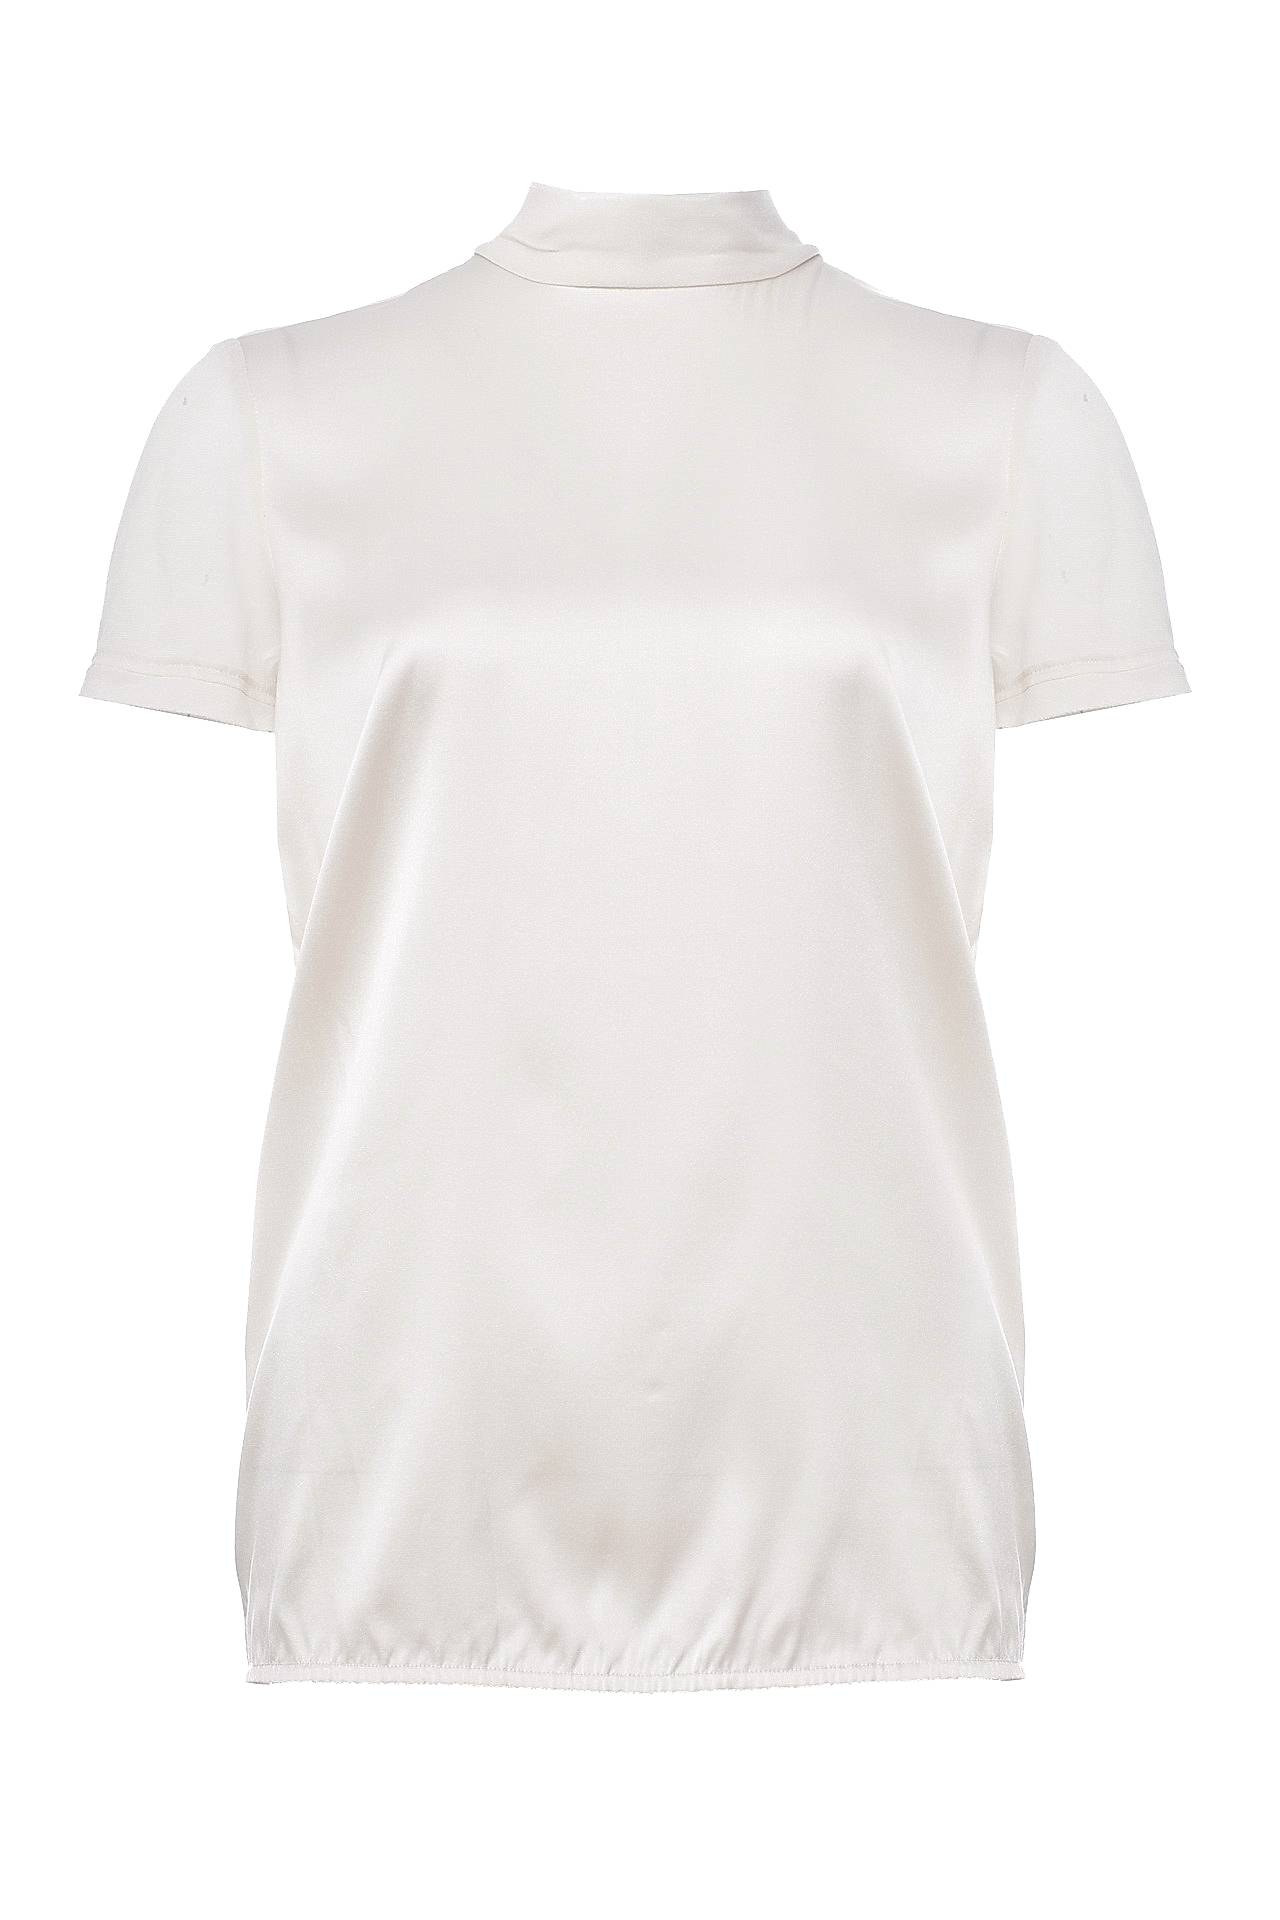 Одежда женская Блузка TWIN-SET (TA62BP/17.1). Купить за 6650 руб.